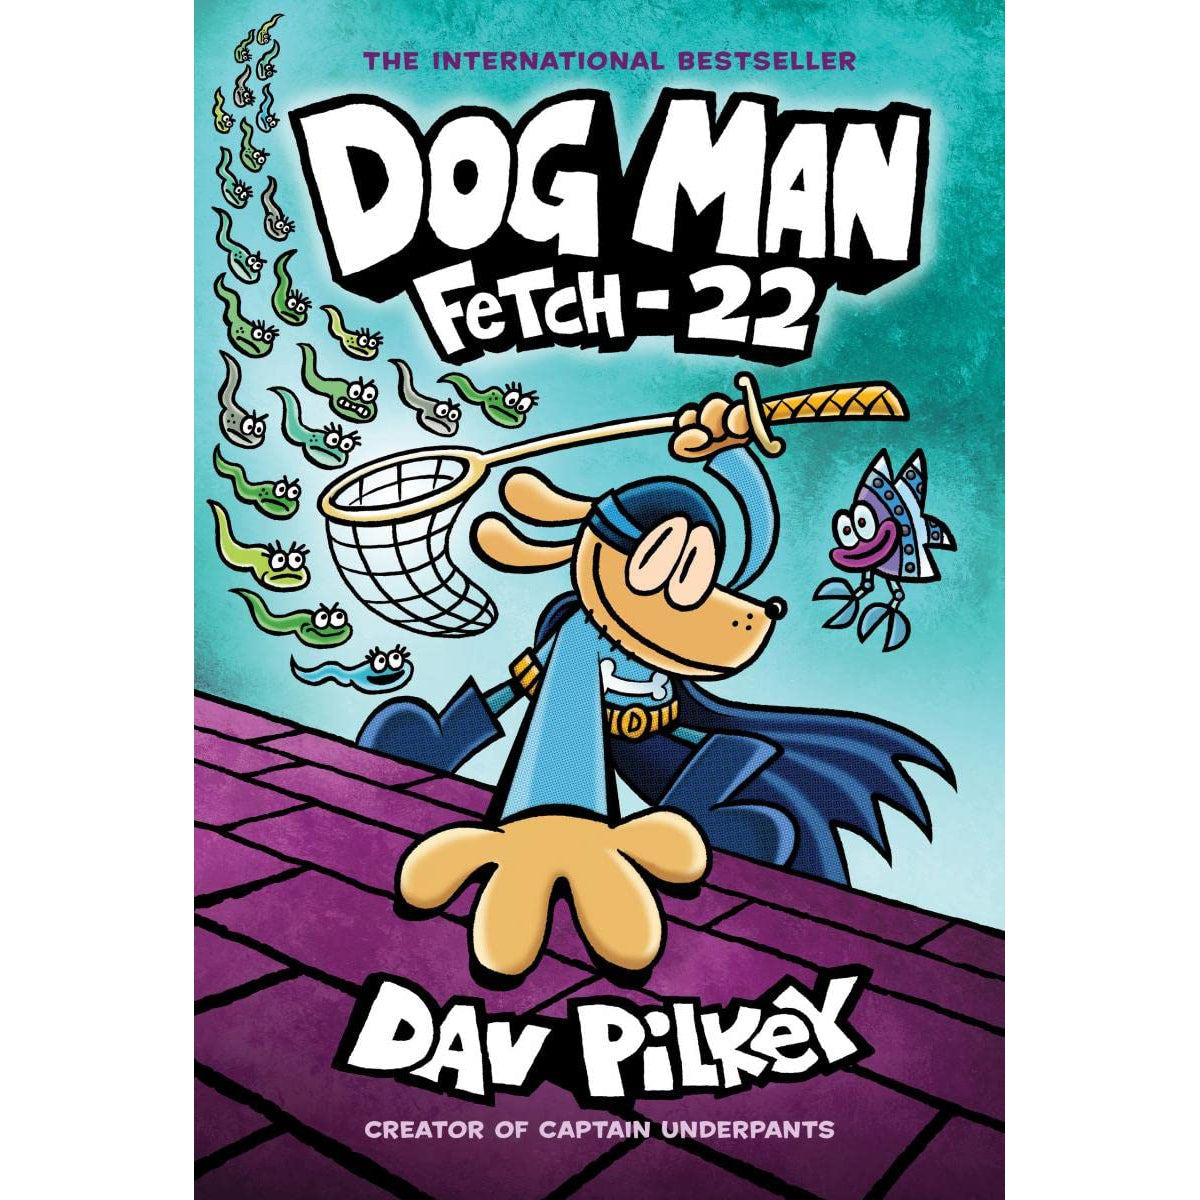 Dog Man: Fetch-22 [Book]